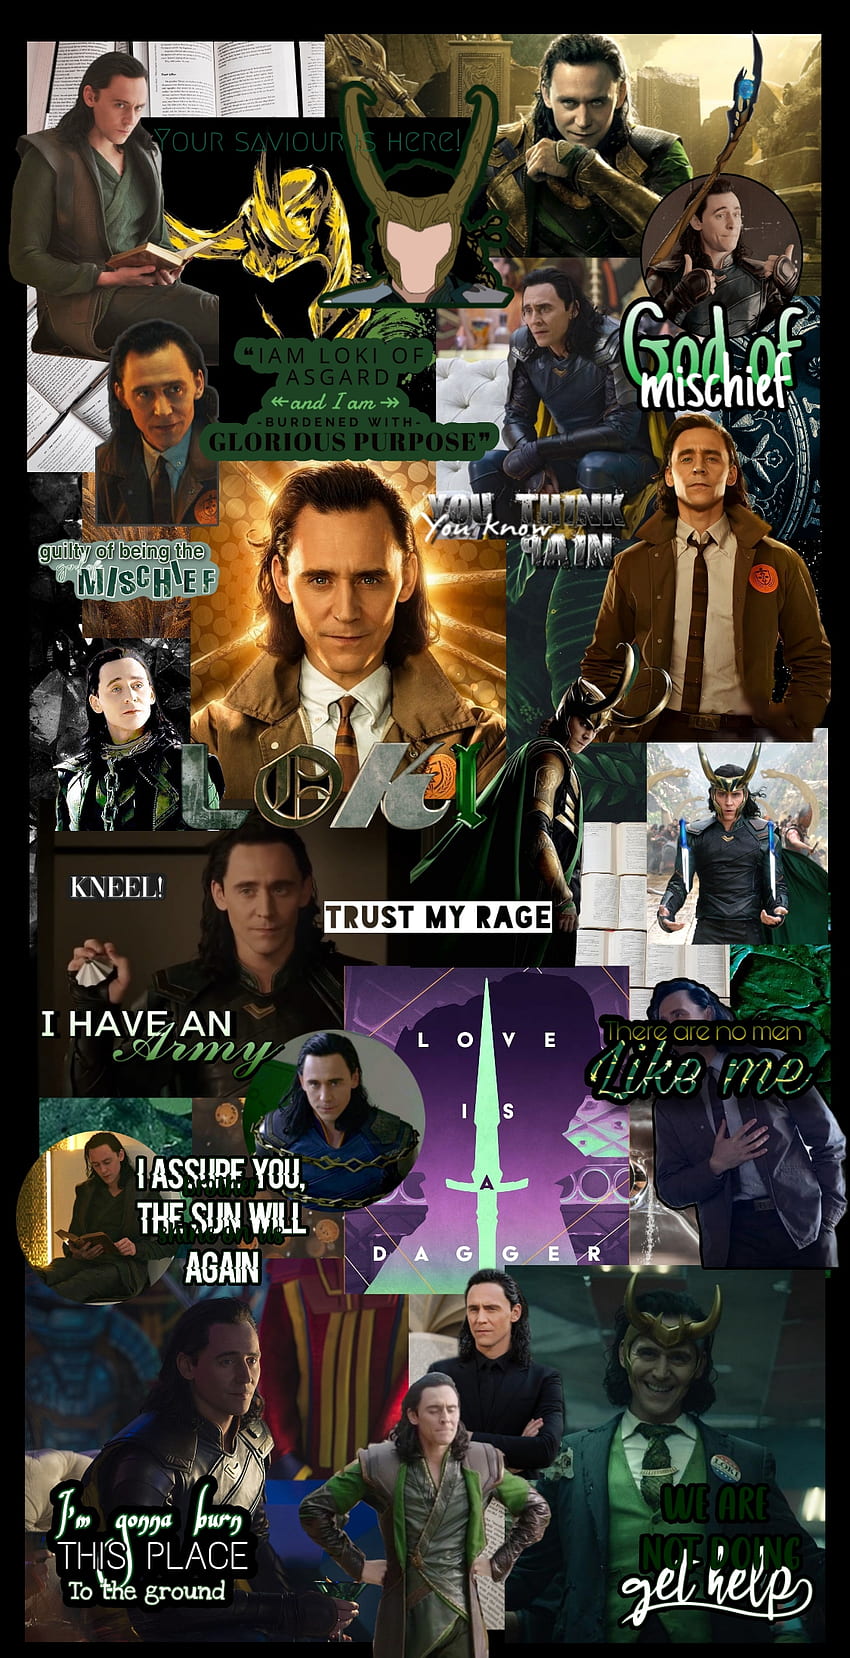 Loki, keajaiban, pembalas wallpaper ponsel HD